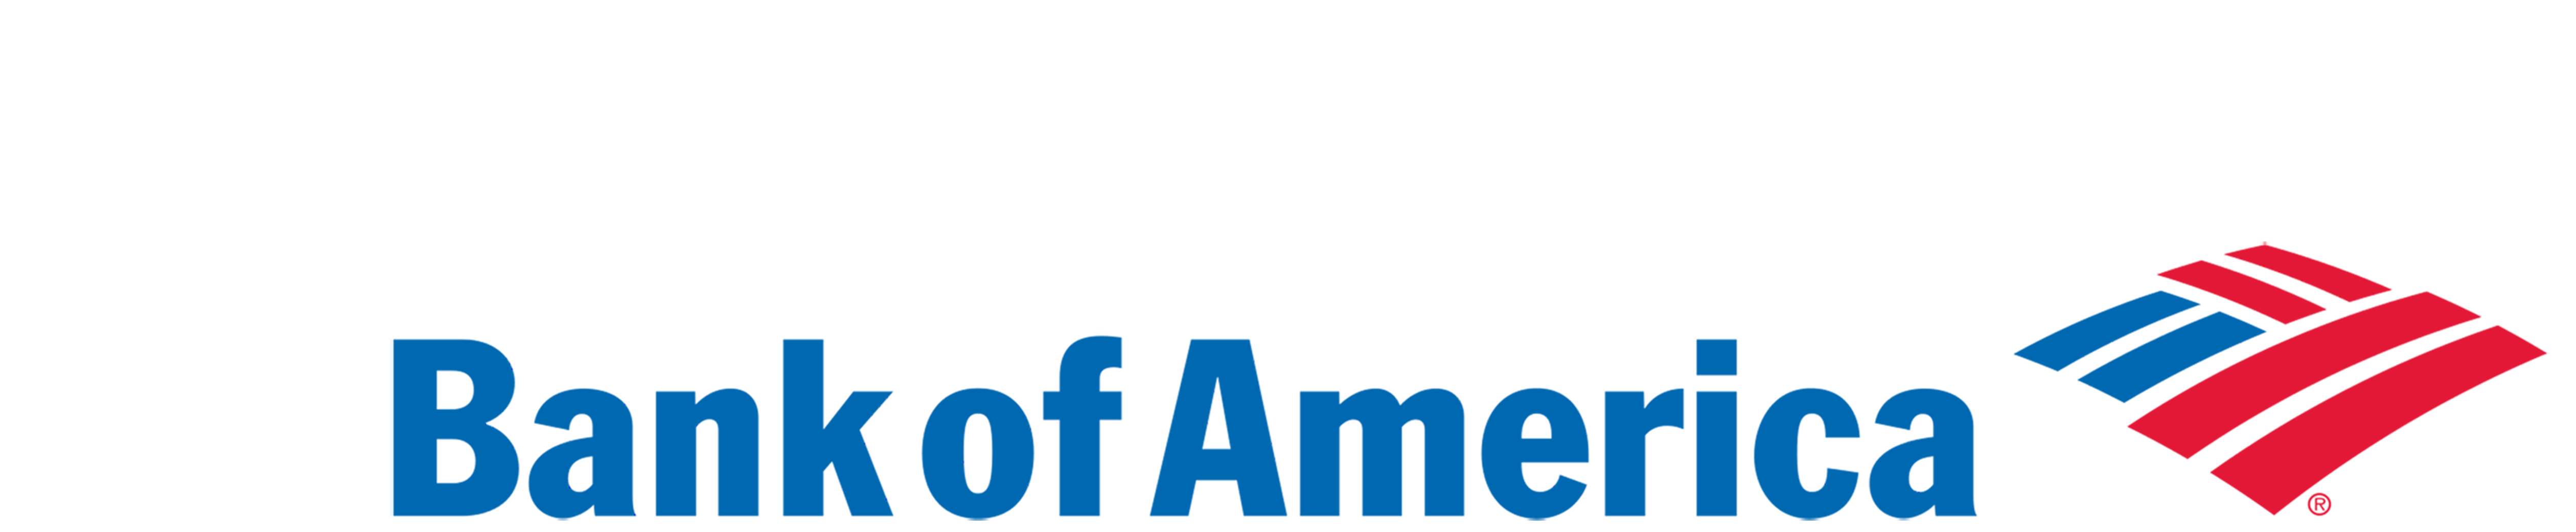 Of America Bank Logo HD Image Free PNG Image